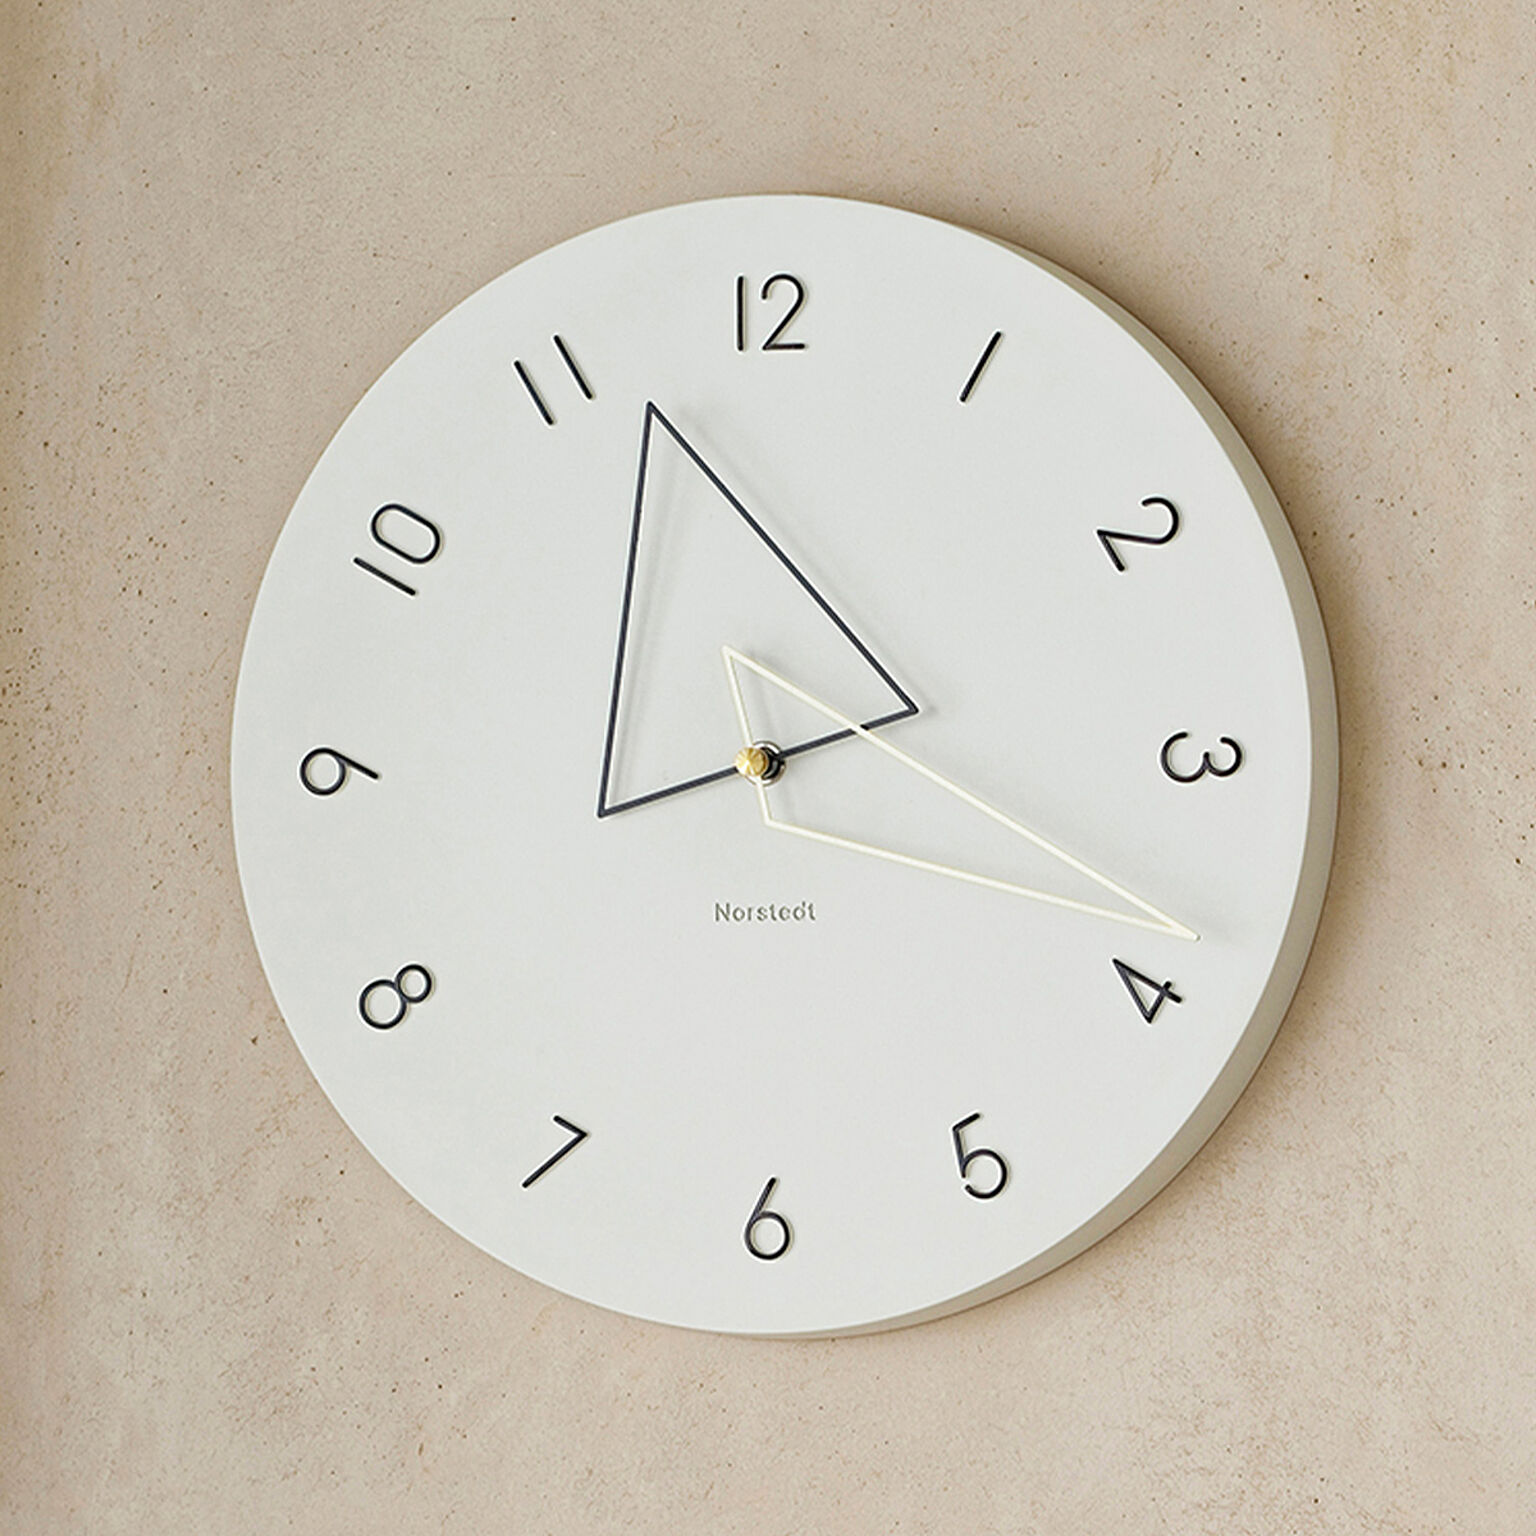 壁掛け時計 時計 おしゃれ かわいい トライアングル スイープムーブメント Kolmio コルミオ ウォールクロック 北欧 デザイン ダイニング リビング シン